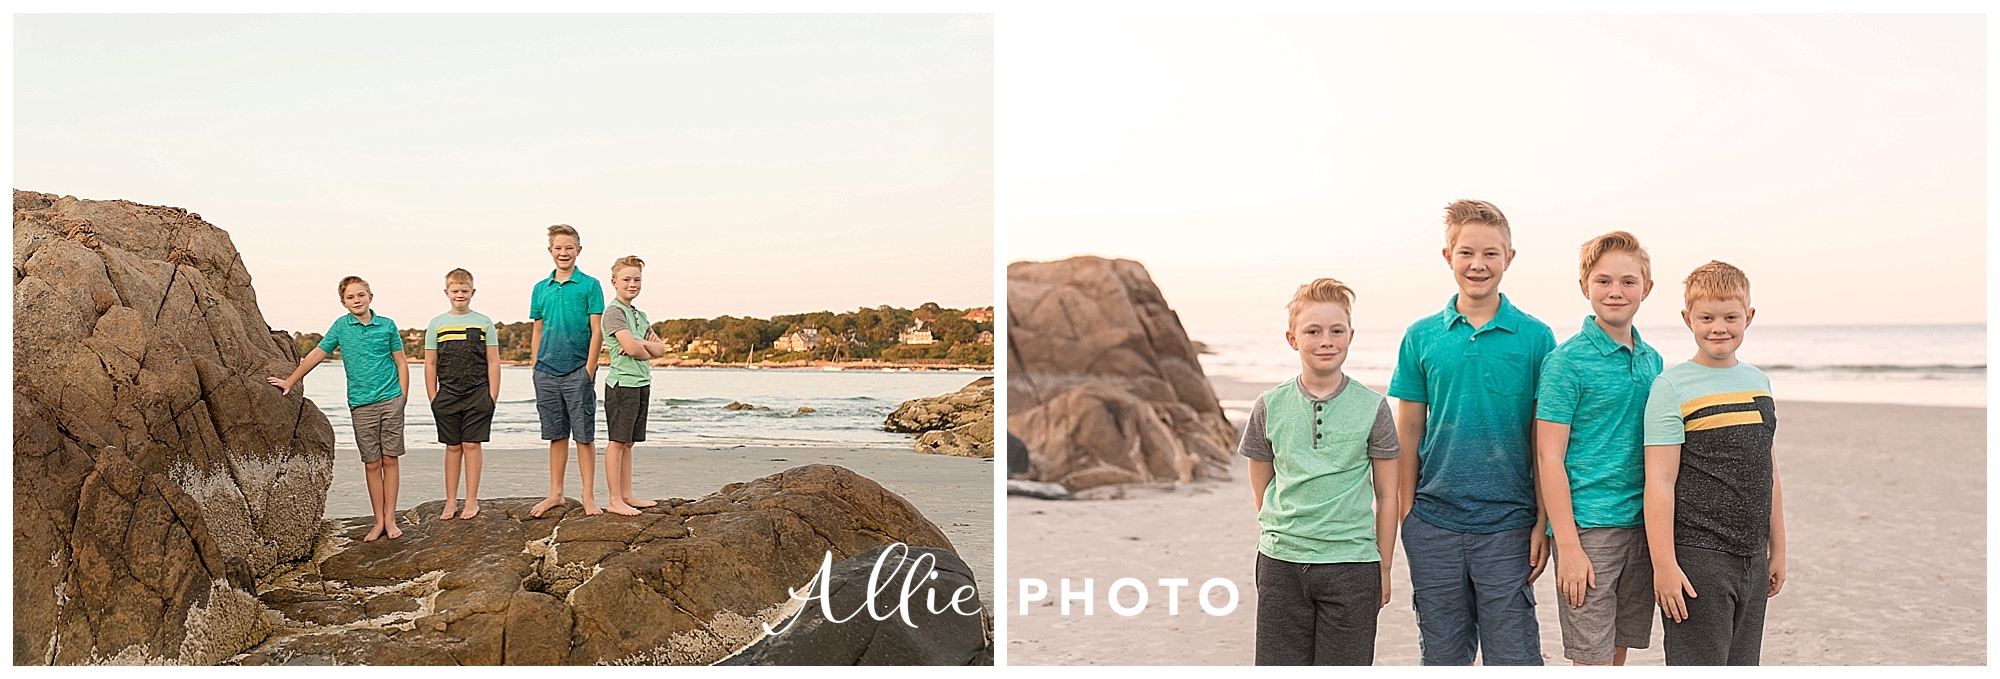 Massachusetts_photographer_beach_family_session_0002.jpg